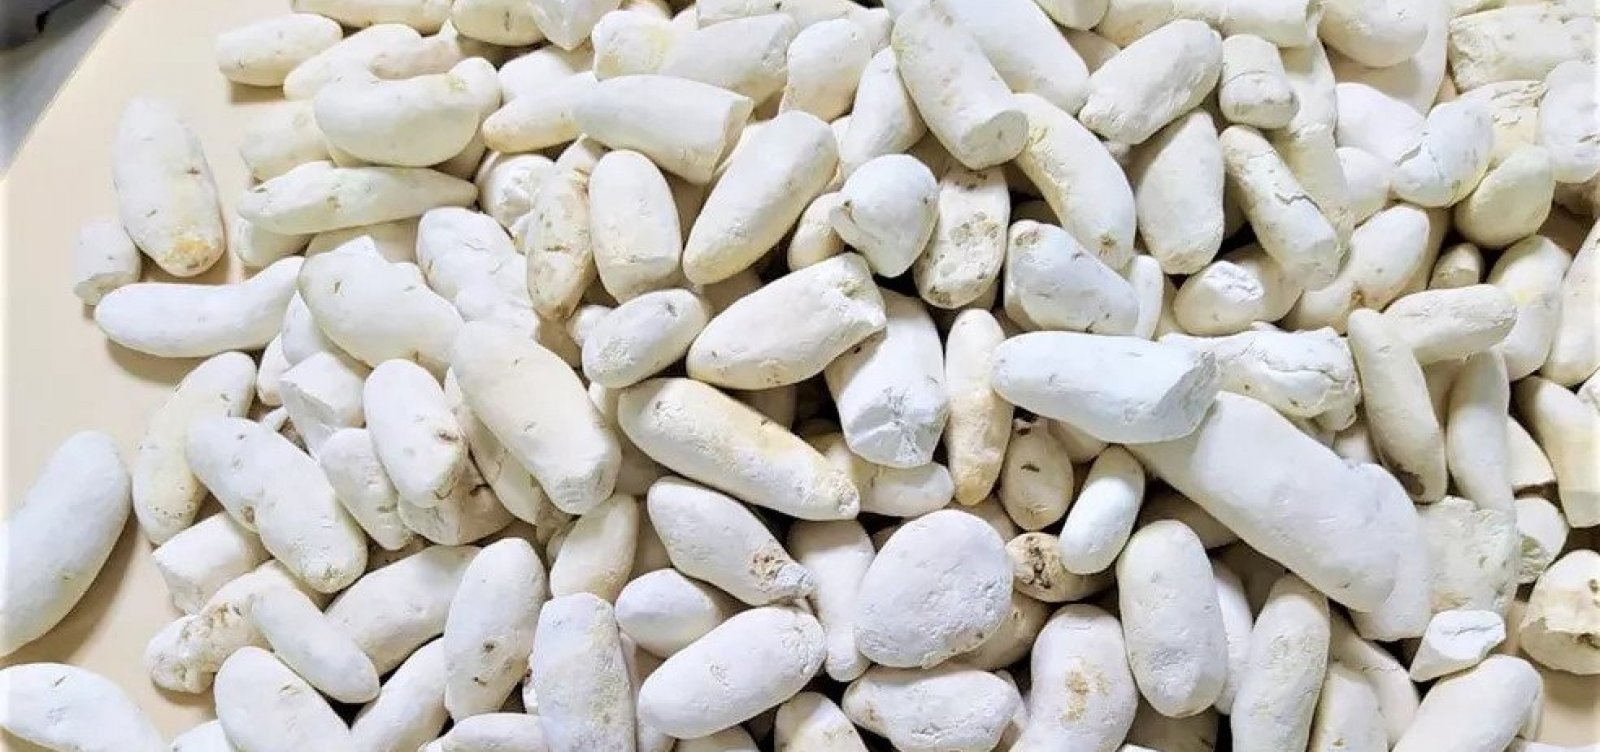 Boliviana é presa transportando cocaína em batatas falsas na Bahia